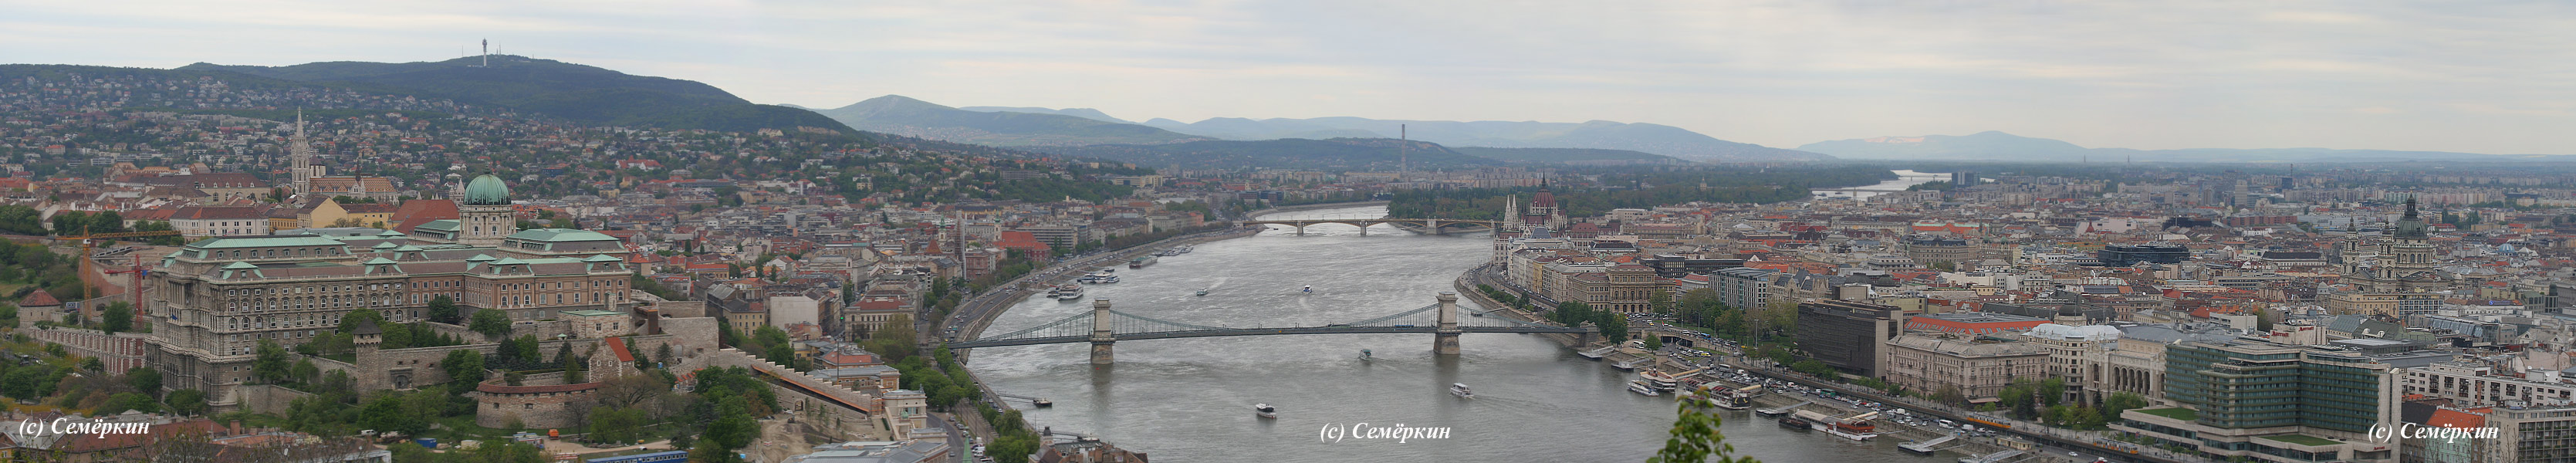 Будапешт, панорама города с цитадели